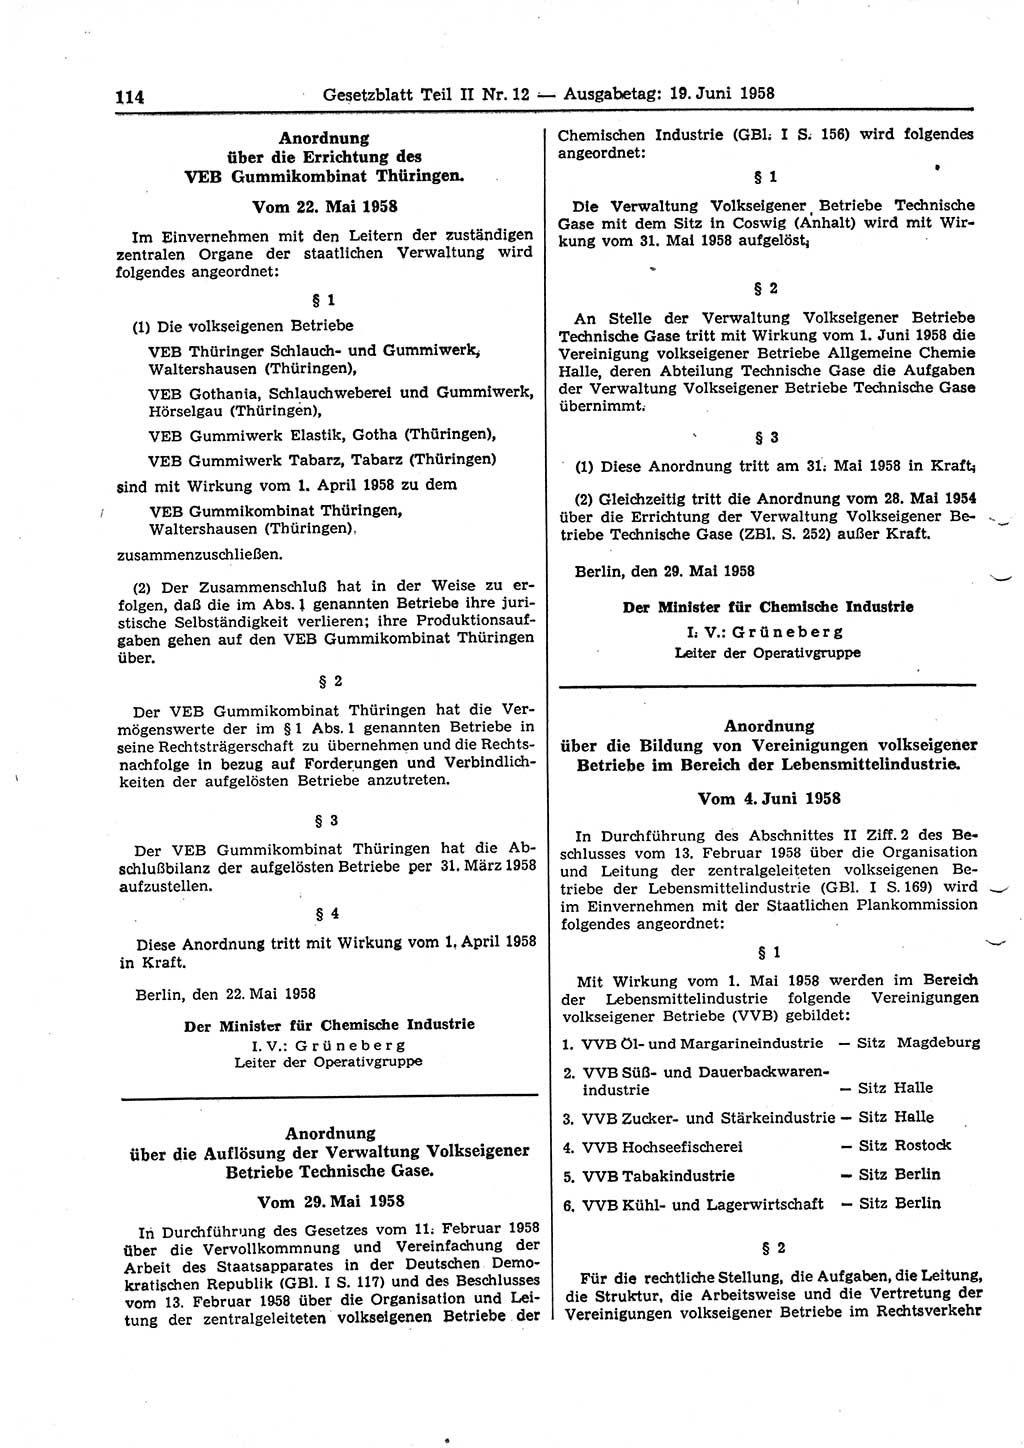 Gesetzblatt (GBl.) der Deutschen Demokratischen Republik (DDR) Teil ⅠⅠ 1958, Seite 114 (GBl. DDR ⅠⅠ 1958, S. 114)